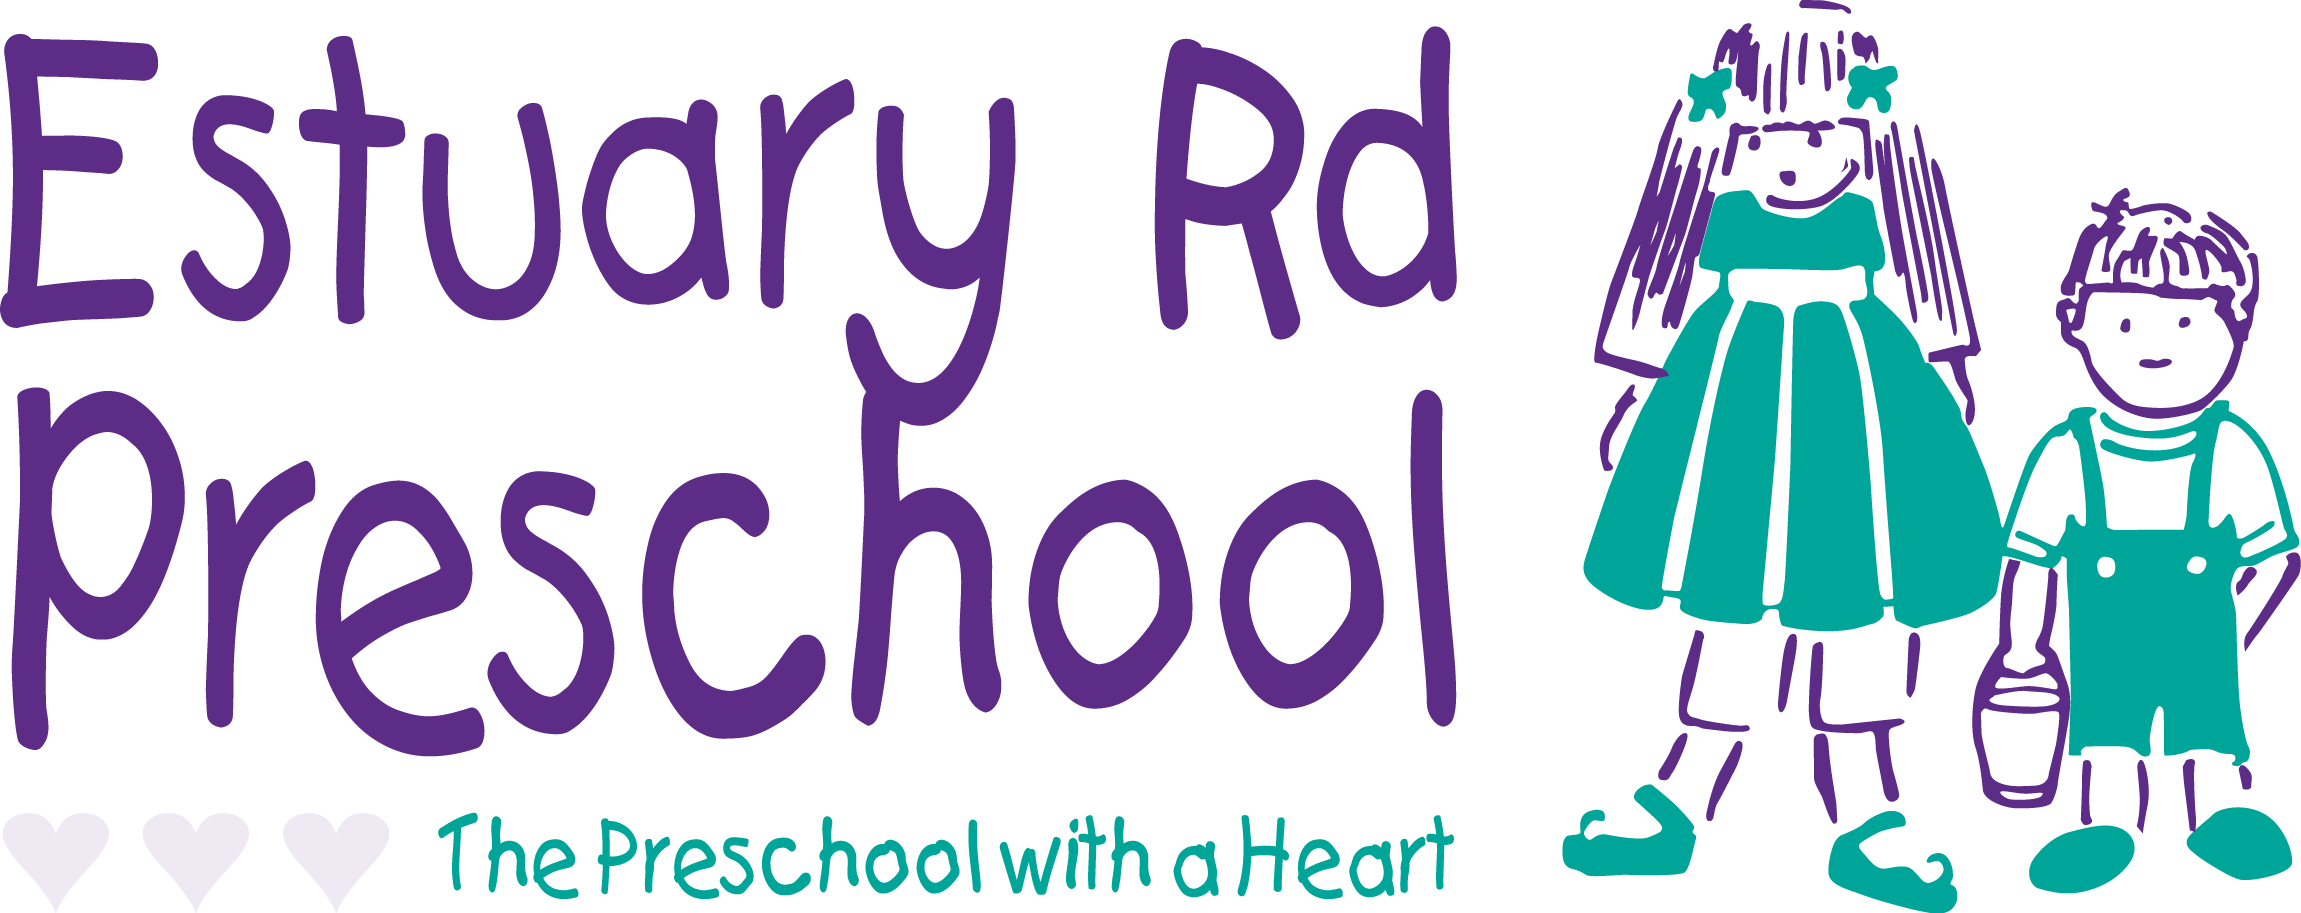 Estuary Road Preschool